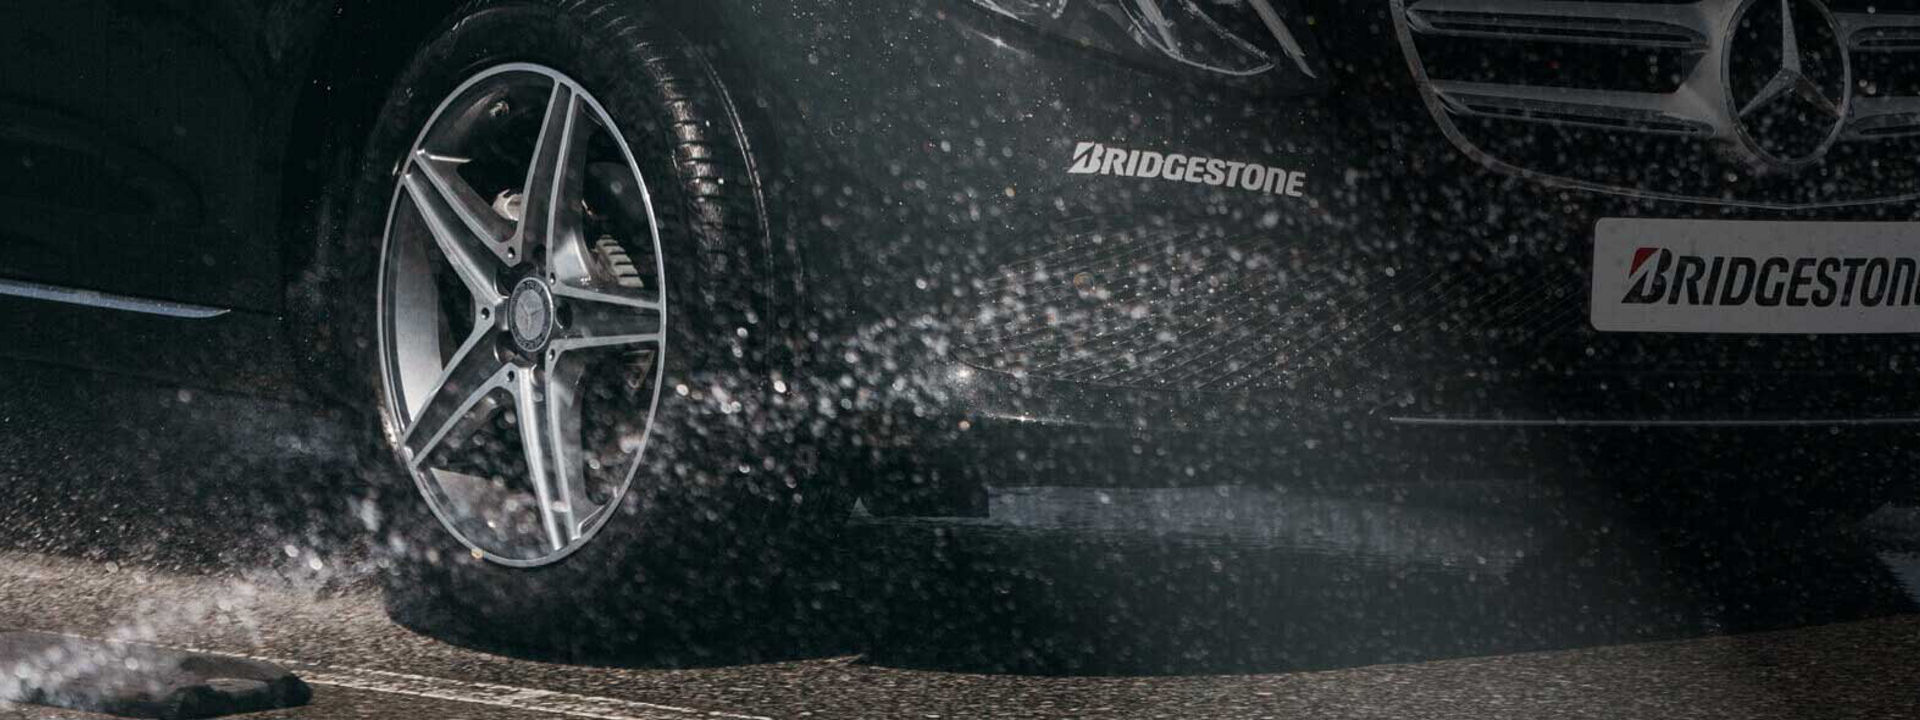 Questa immagine è una vista ravvicinata di un pneumatico Bridgestone Turanza che percorre un fondo stradale bagnato